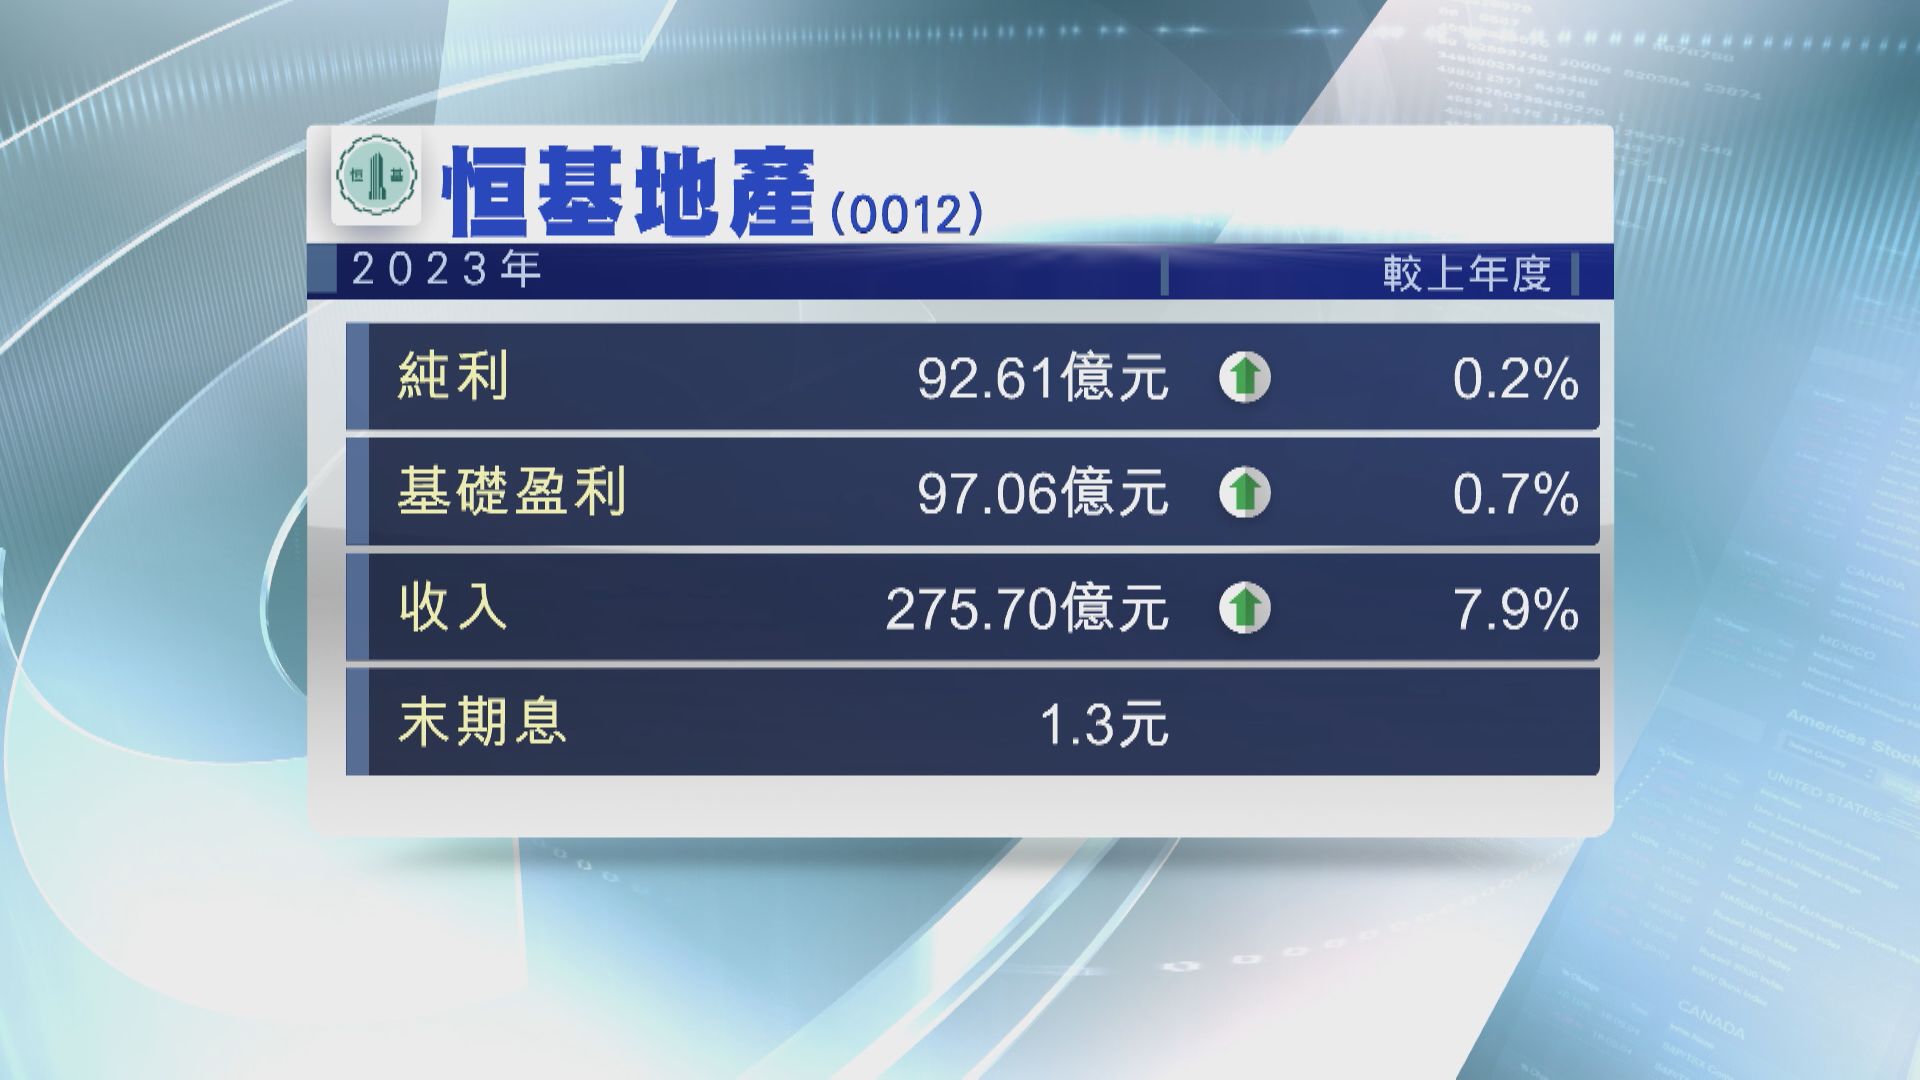 【業績速報】恒地去年基礎盈利升不足1% 末期息1.3元